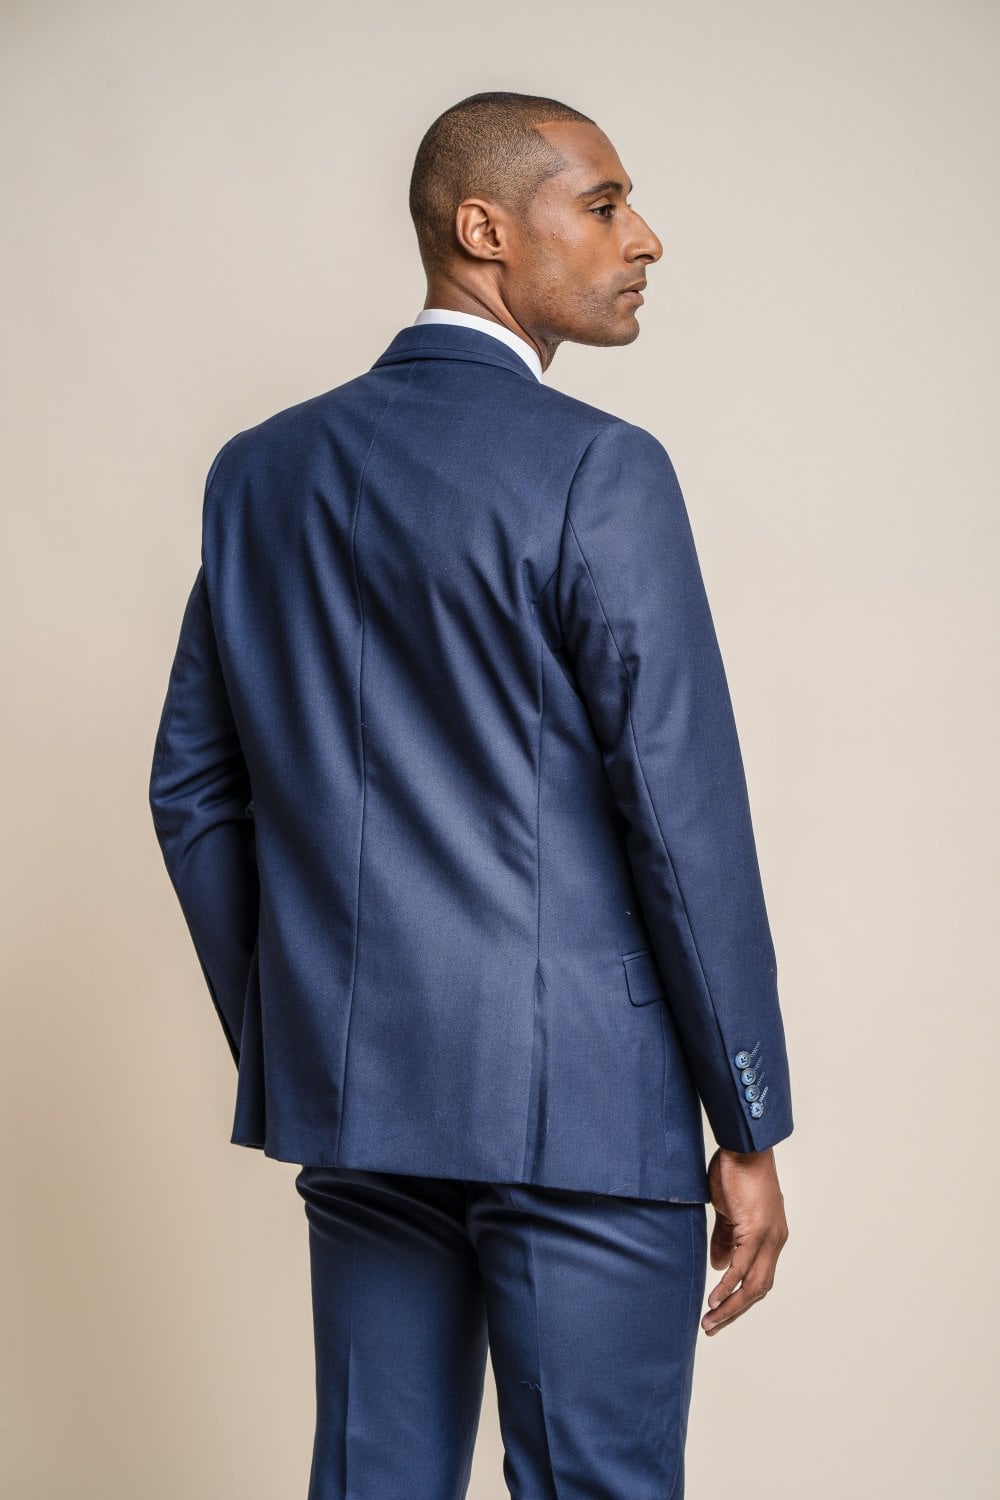 Retail - The Jefferson Suit - 4001